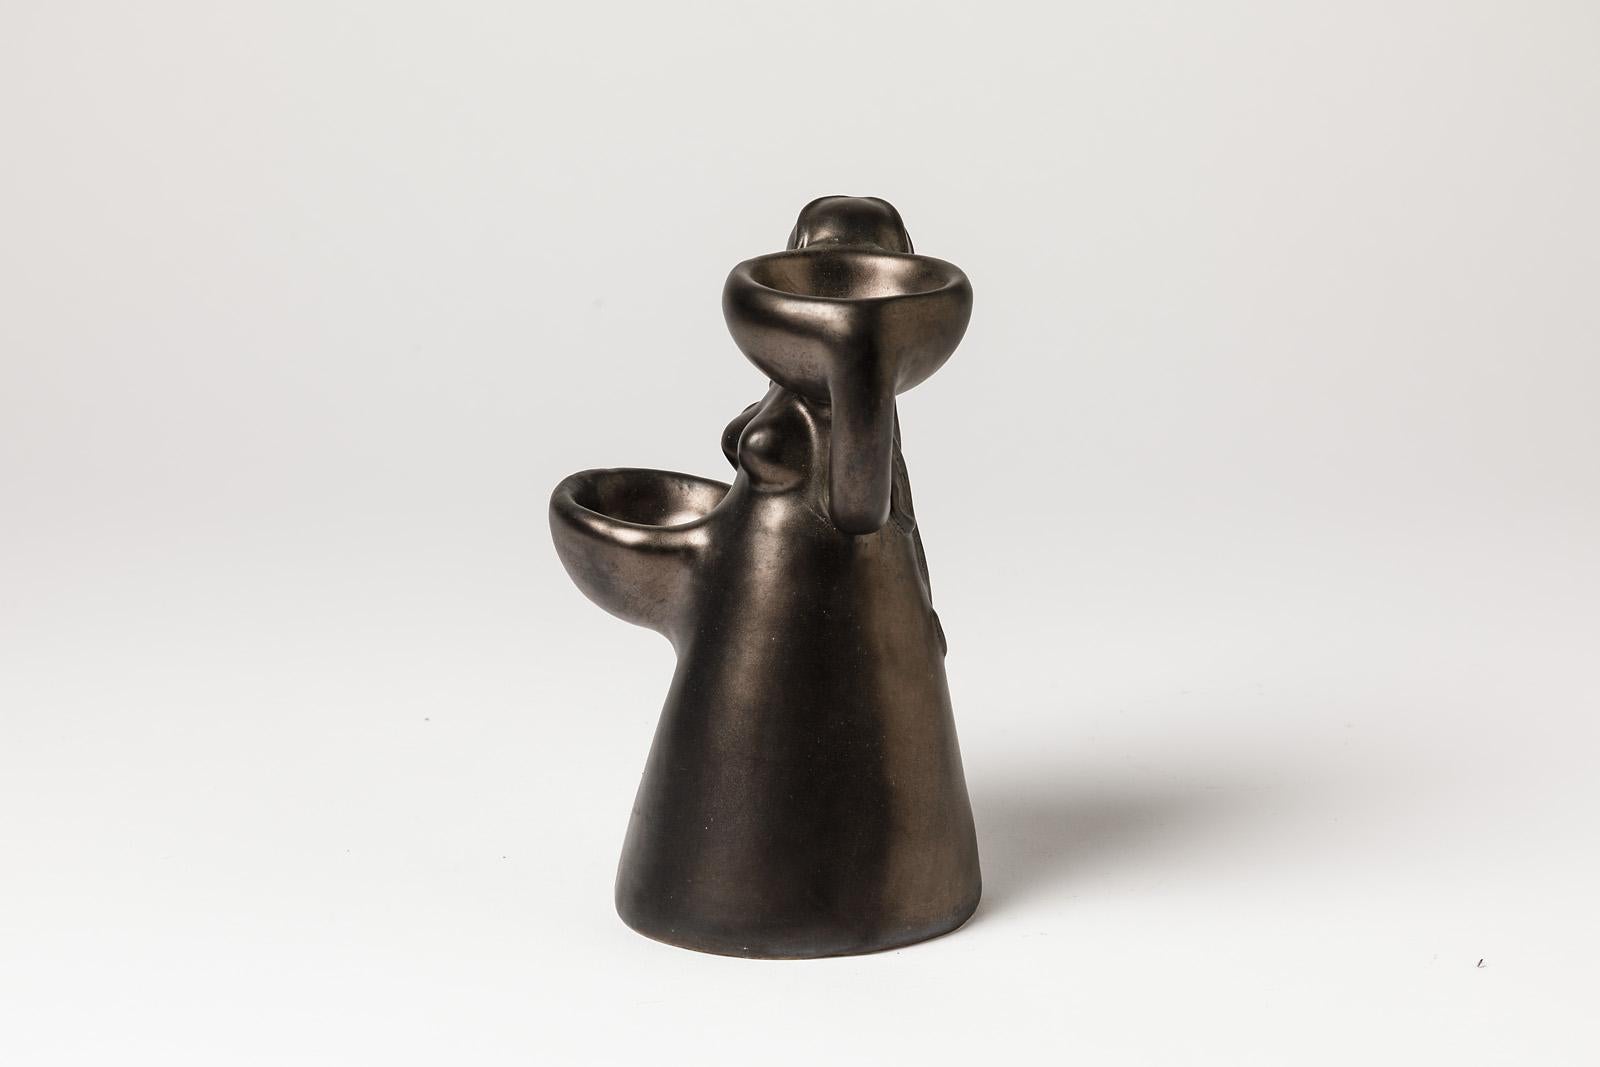 Figurative ceramic sculpture, circa 1960

Elegant black ceramic glaze color

Original mid-20th century form

Perfect condition

Measures: Height 18cm, large 12cm.